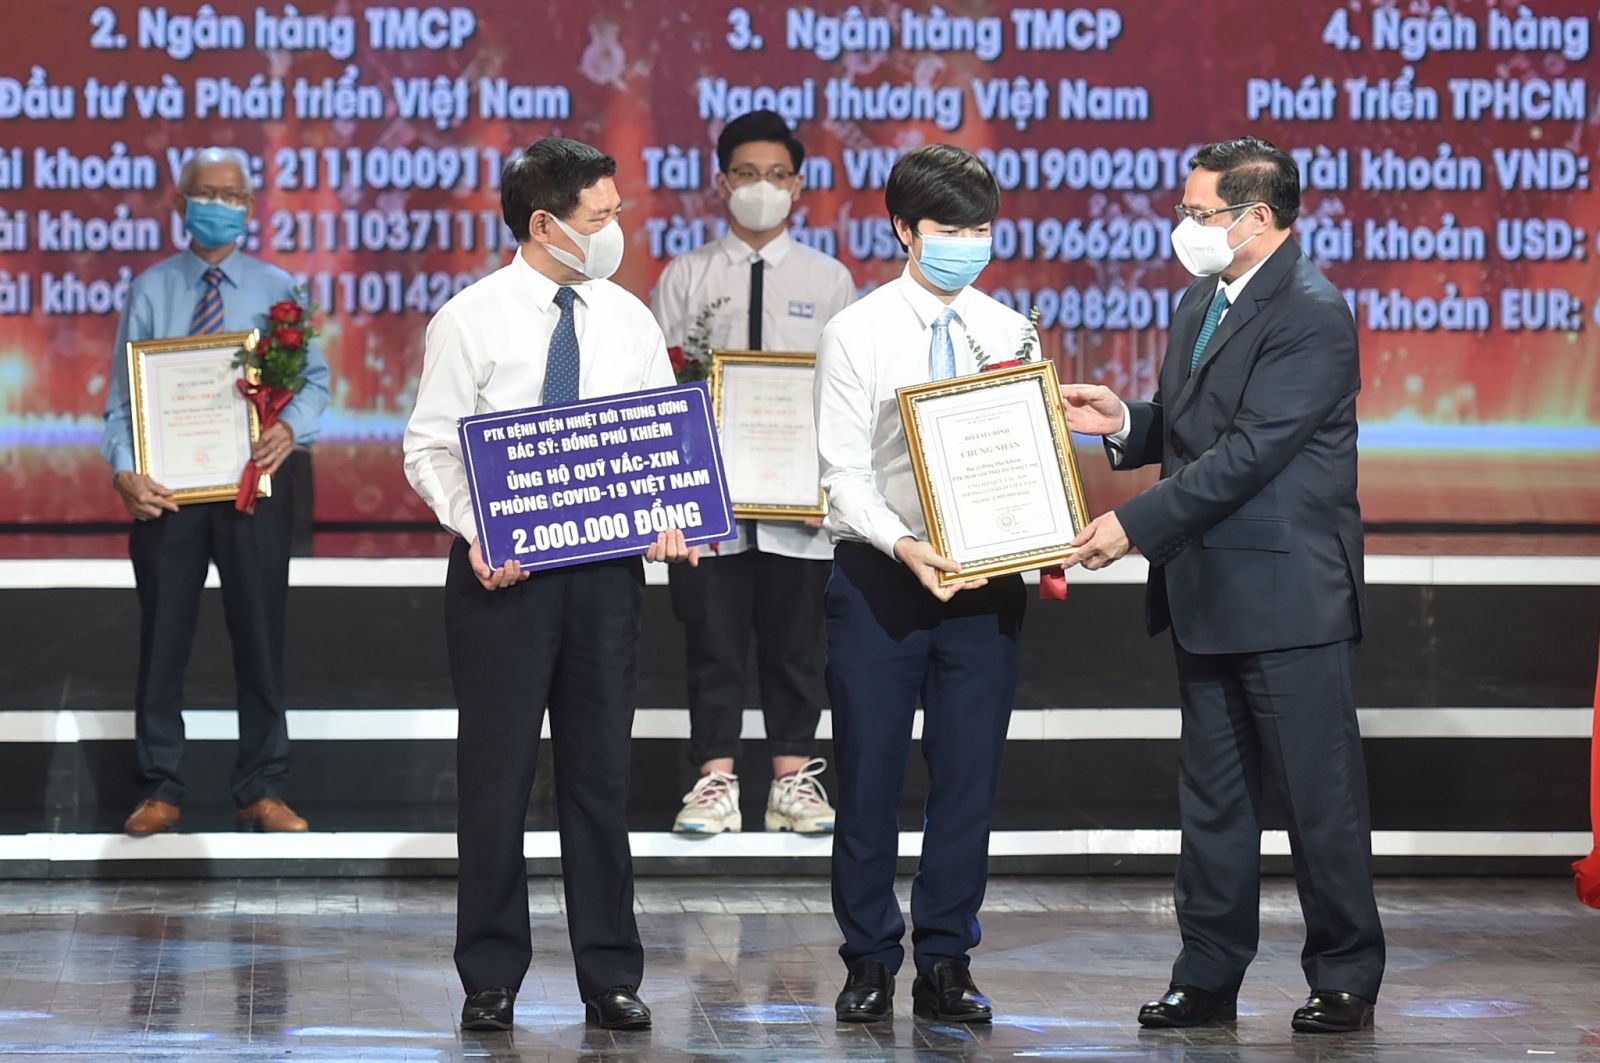 Thủ tướng Chính phủ Phạm Minh Chính trao chứng nhận, hoa cảm ơn Bác sĩ Đồng Phú Khiêm, Phó trưởng khoa điều trị tích cực - Bệnh viện Bệnh Nhiệt đới Trung ương